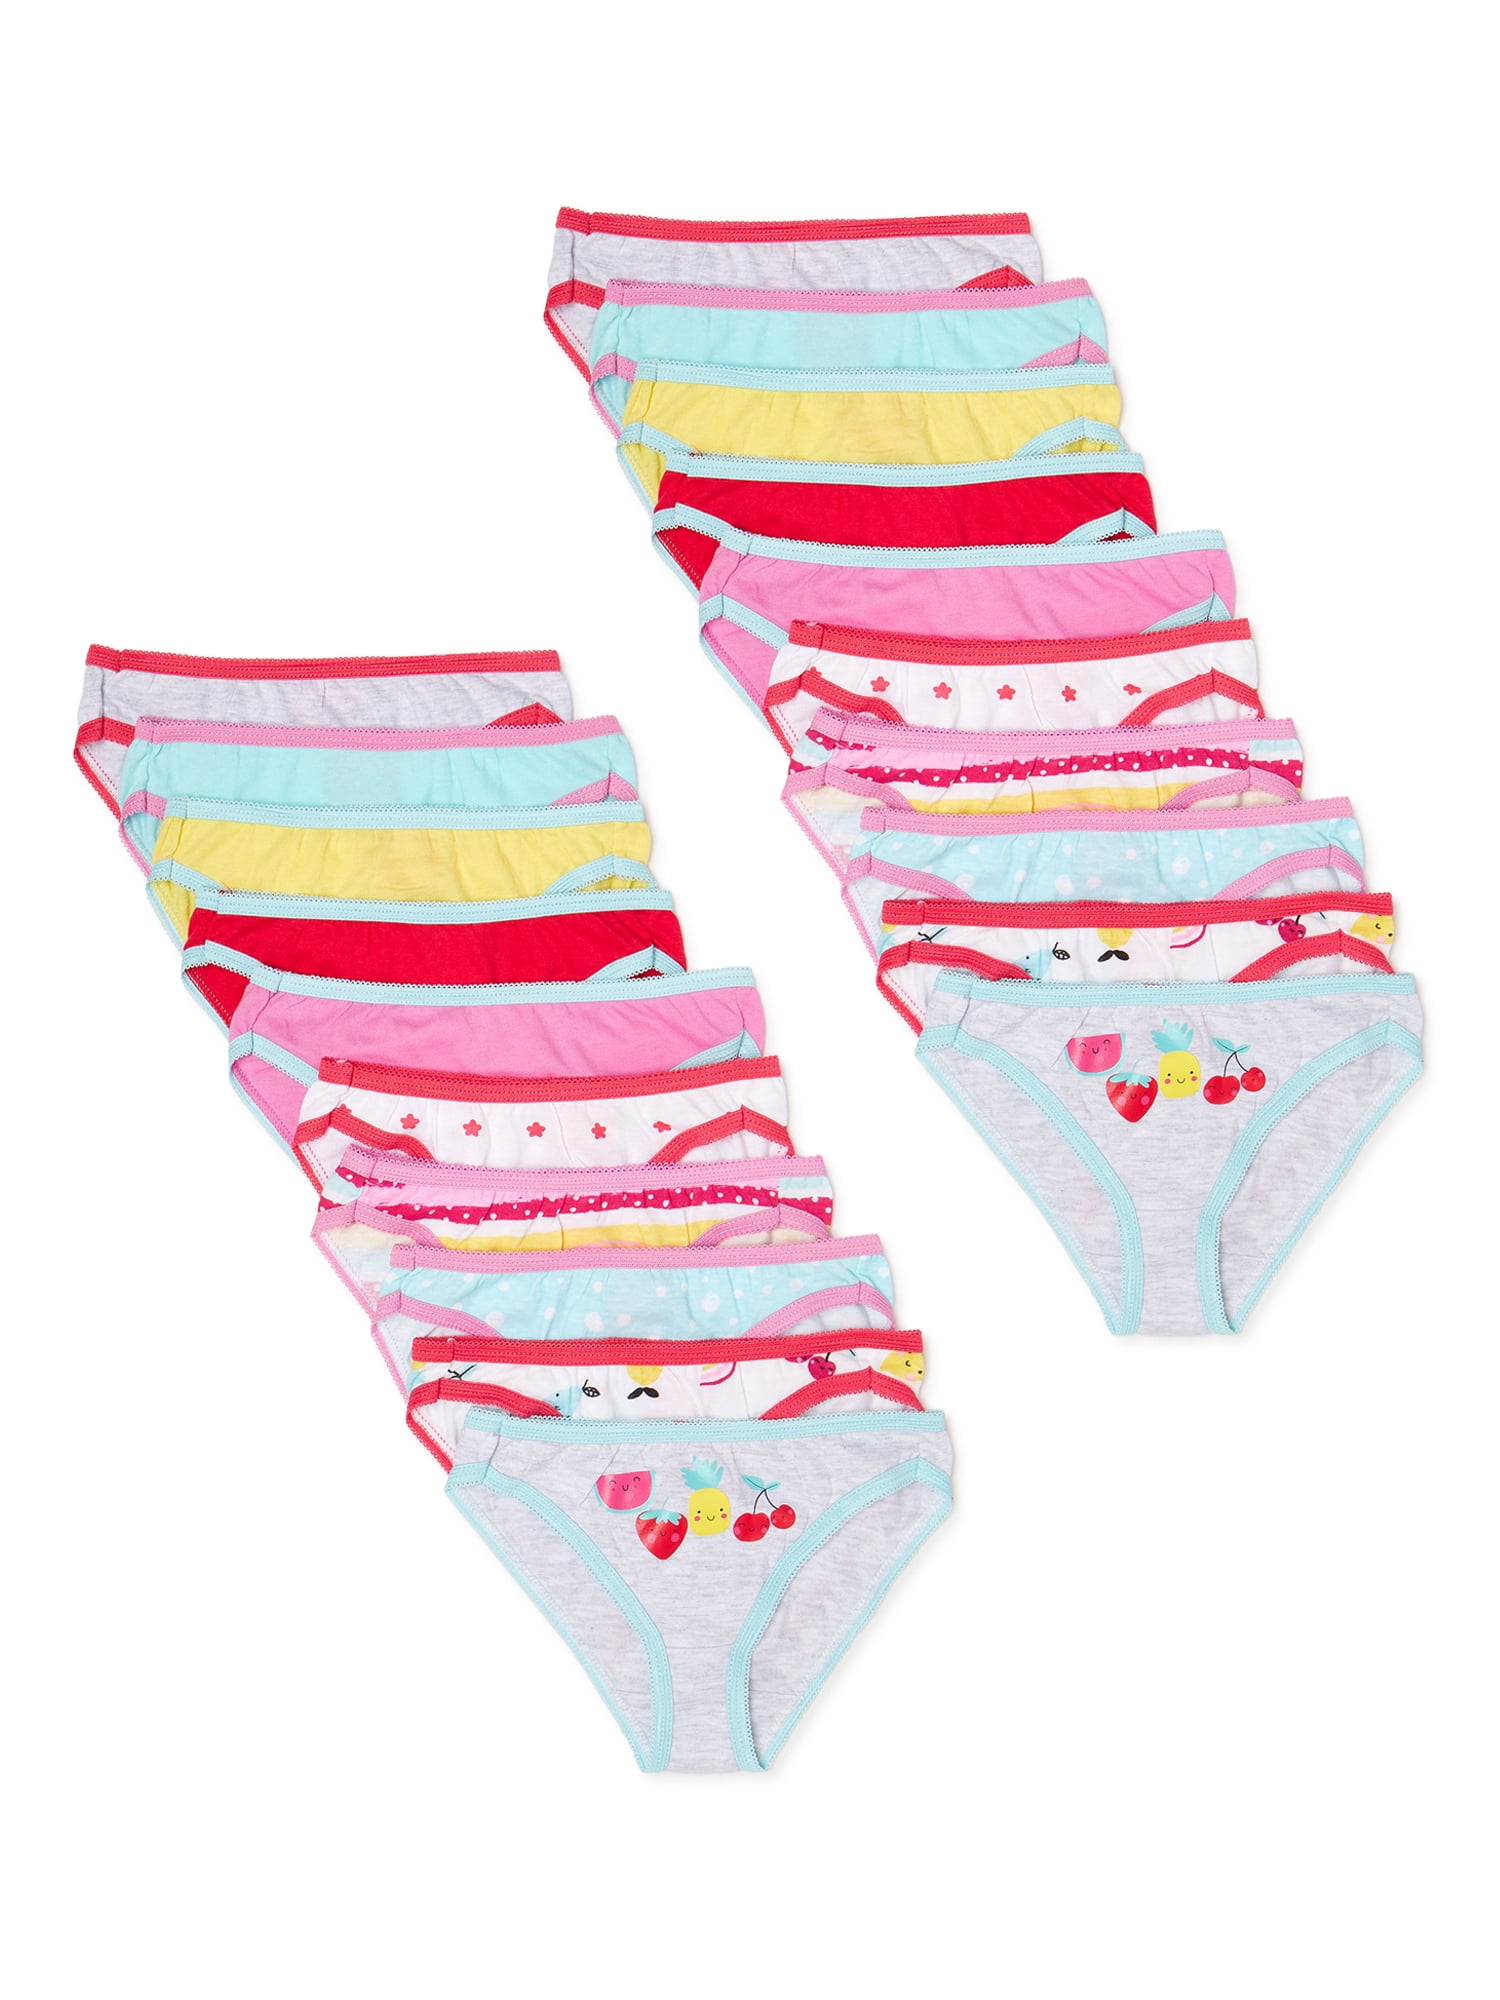 Toddler Girls Underwear, 20-Pack, 2T-4T